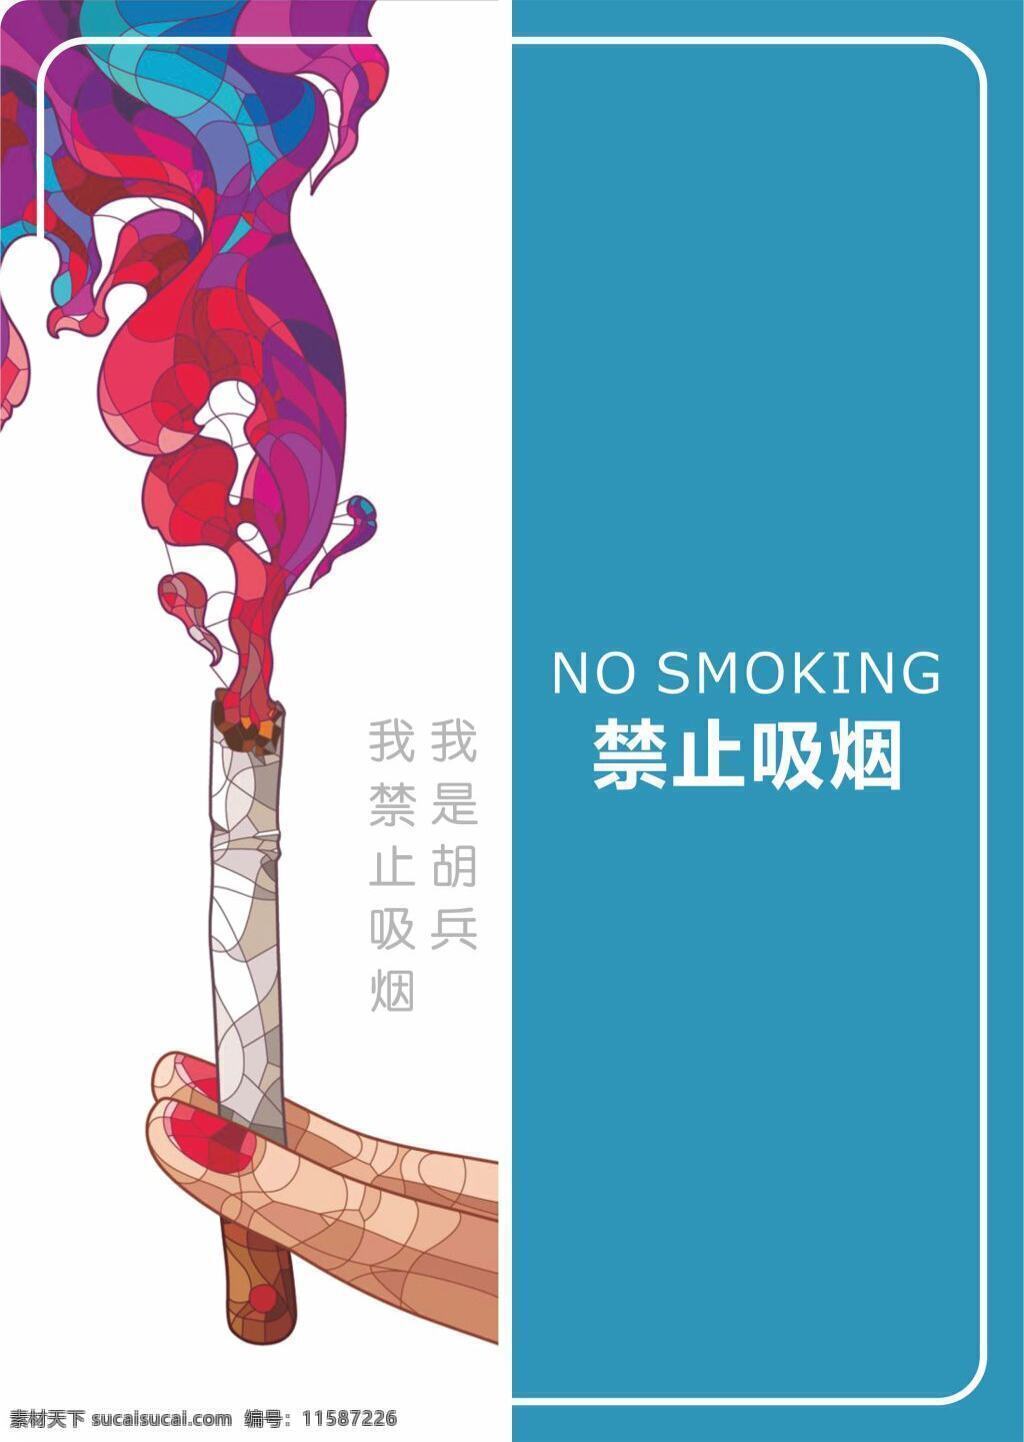 禁止吸烟海报 禁止 吸烟 海报 简洁大气